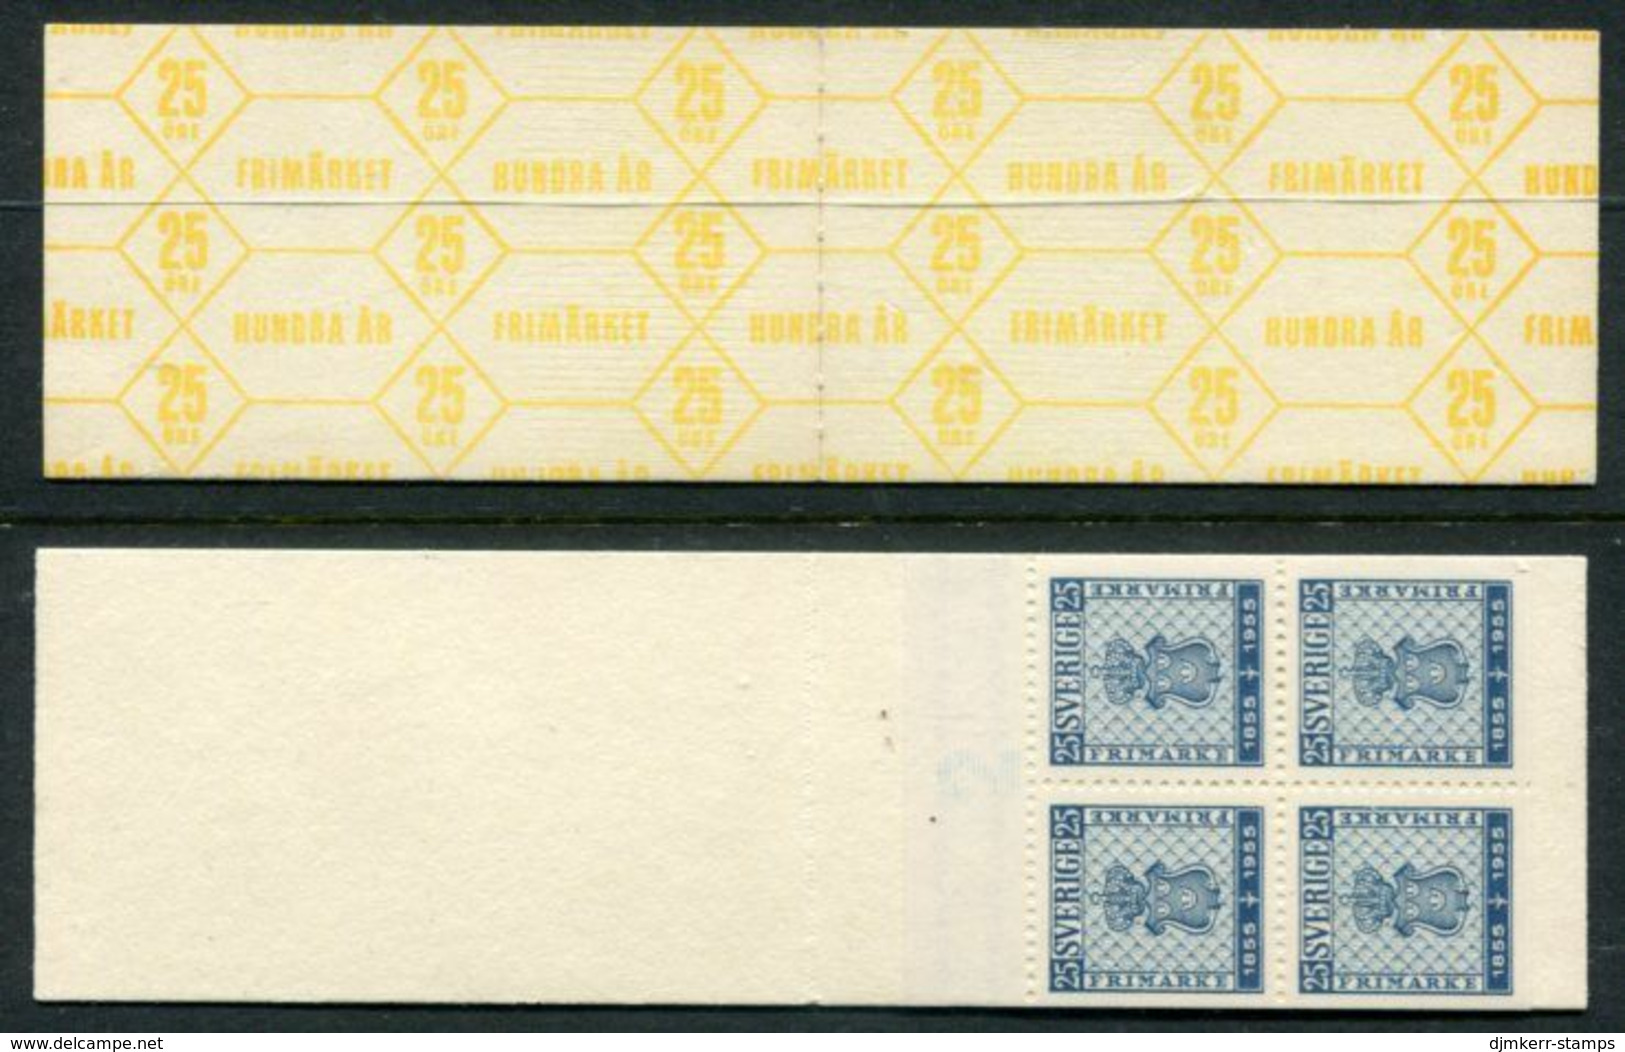 SWEDEN 1955 Stamp Centenary 1 Kr.  Booklet MNH / **.  Michel 402 Dl, Dr, Elu, Eru - 1951-80